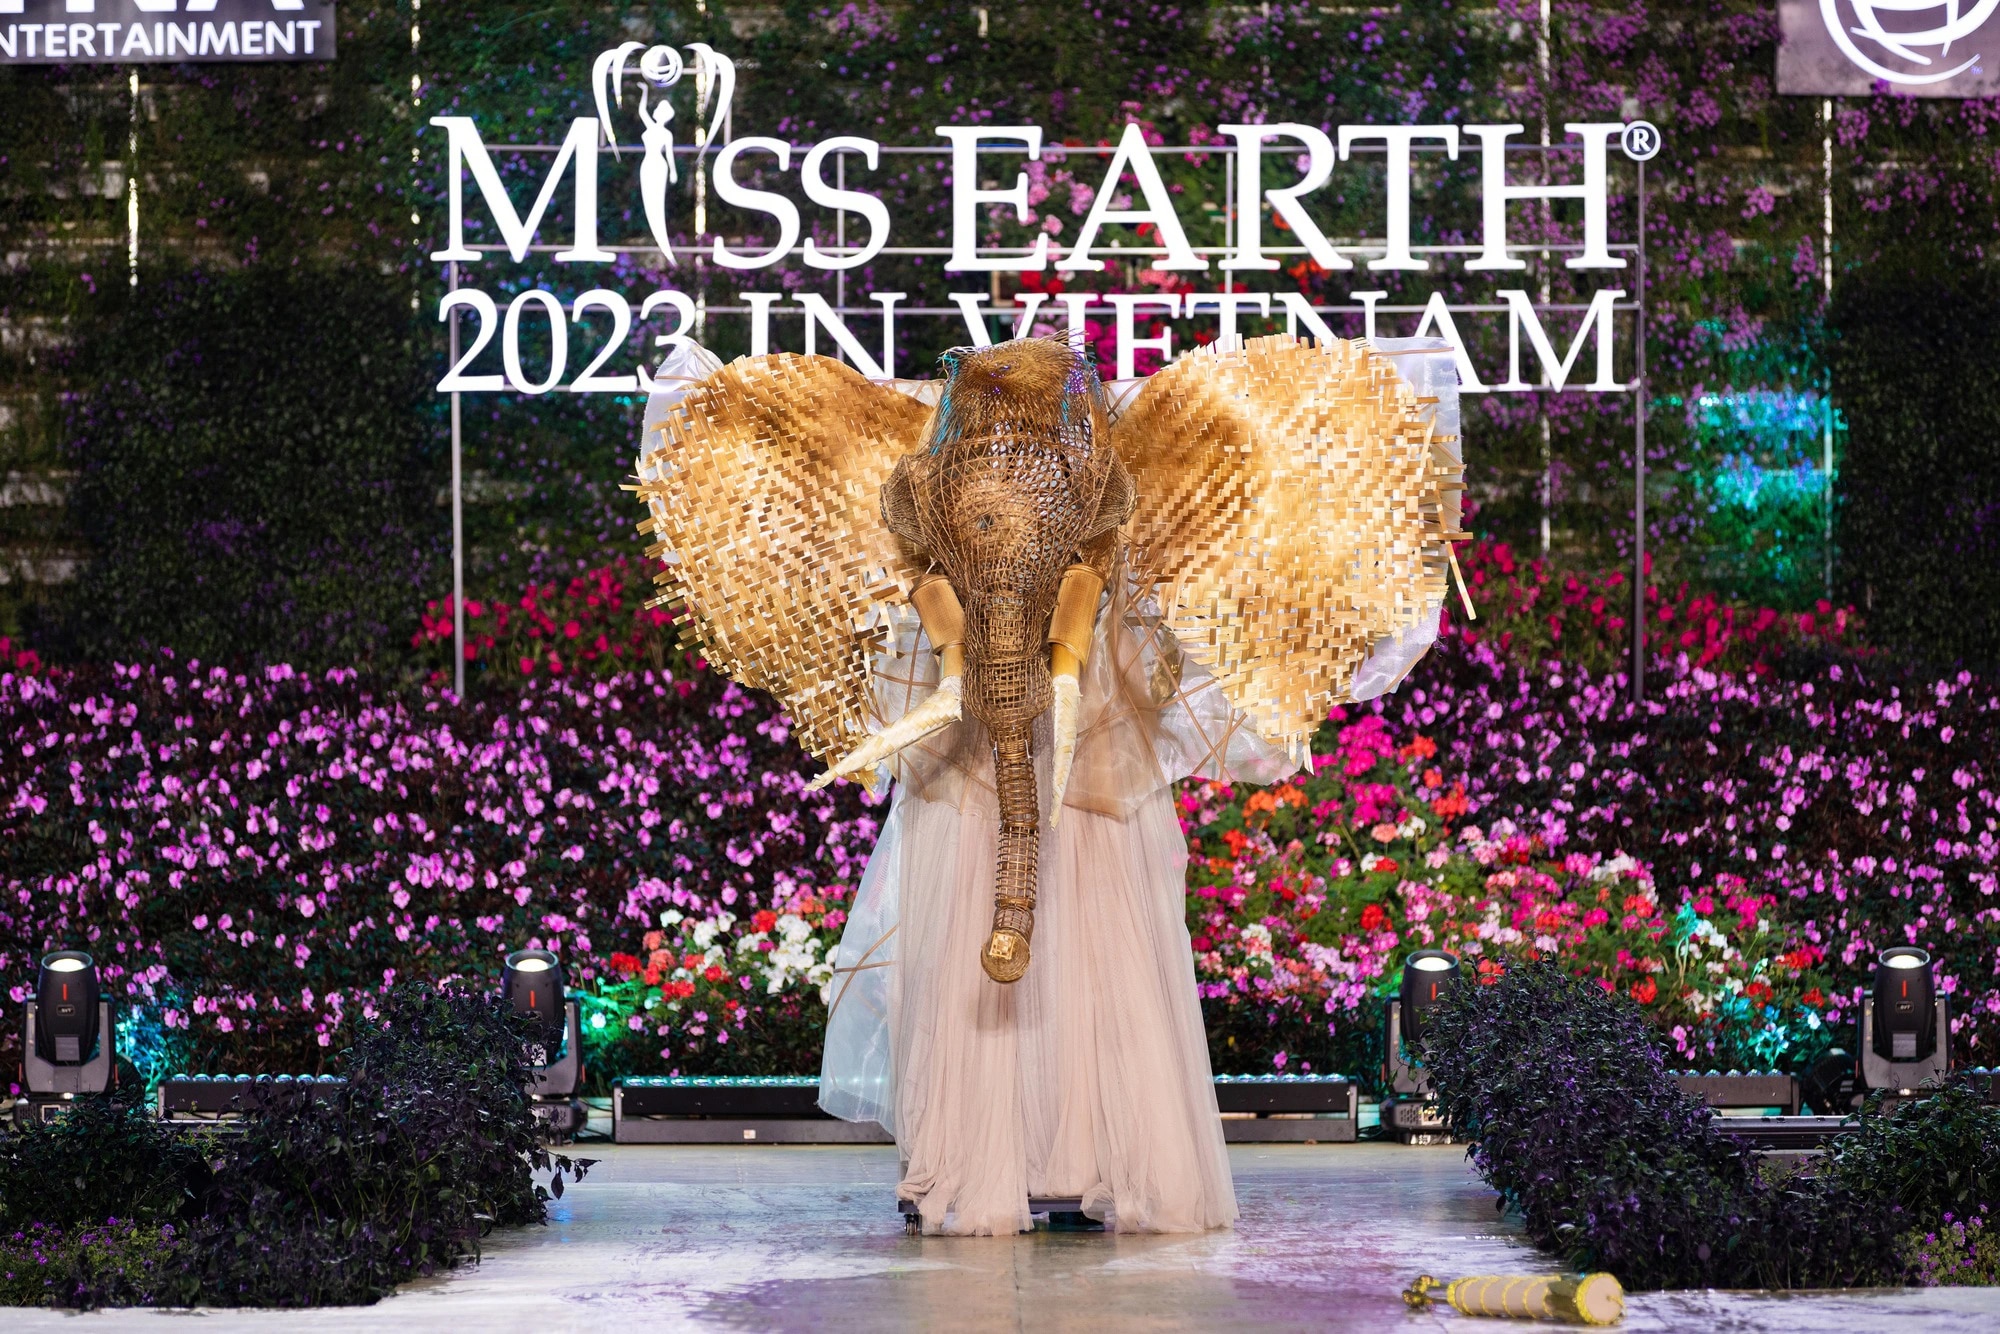 Bán kết Miss Earth 2023 màn trình Trang phục Dân tộc bùng nổ hình ảnh cỏ hoa, muông thú - Ảnh 1.